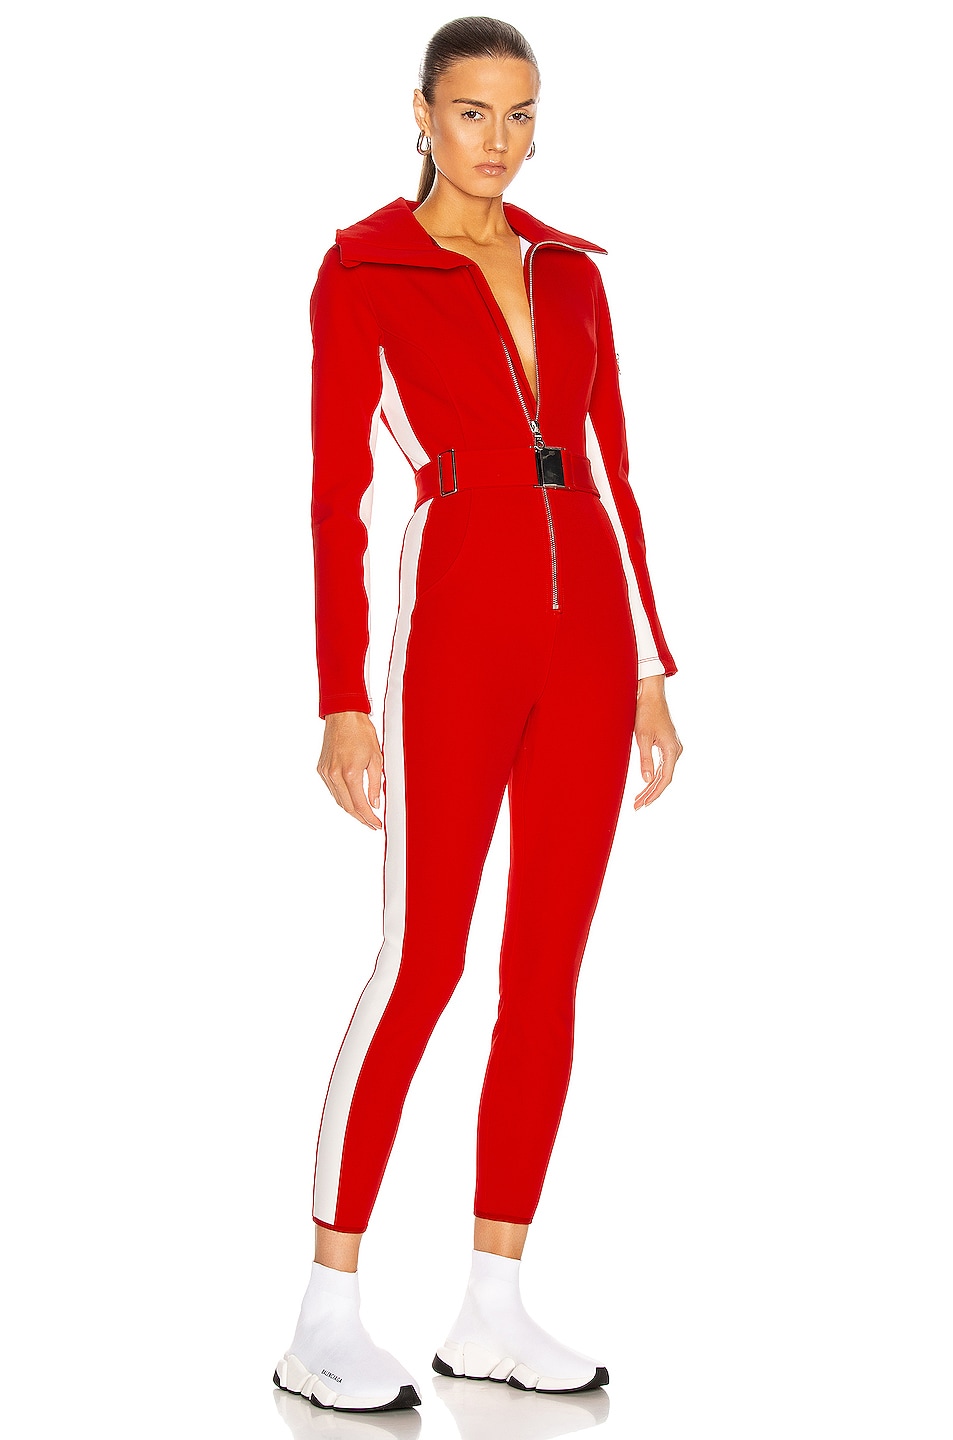 Image 1 of CORDOVA Cordova Ski Suit in Fiery Red